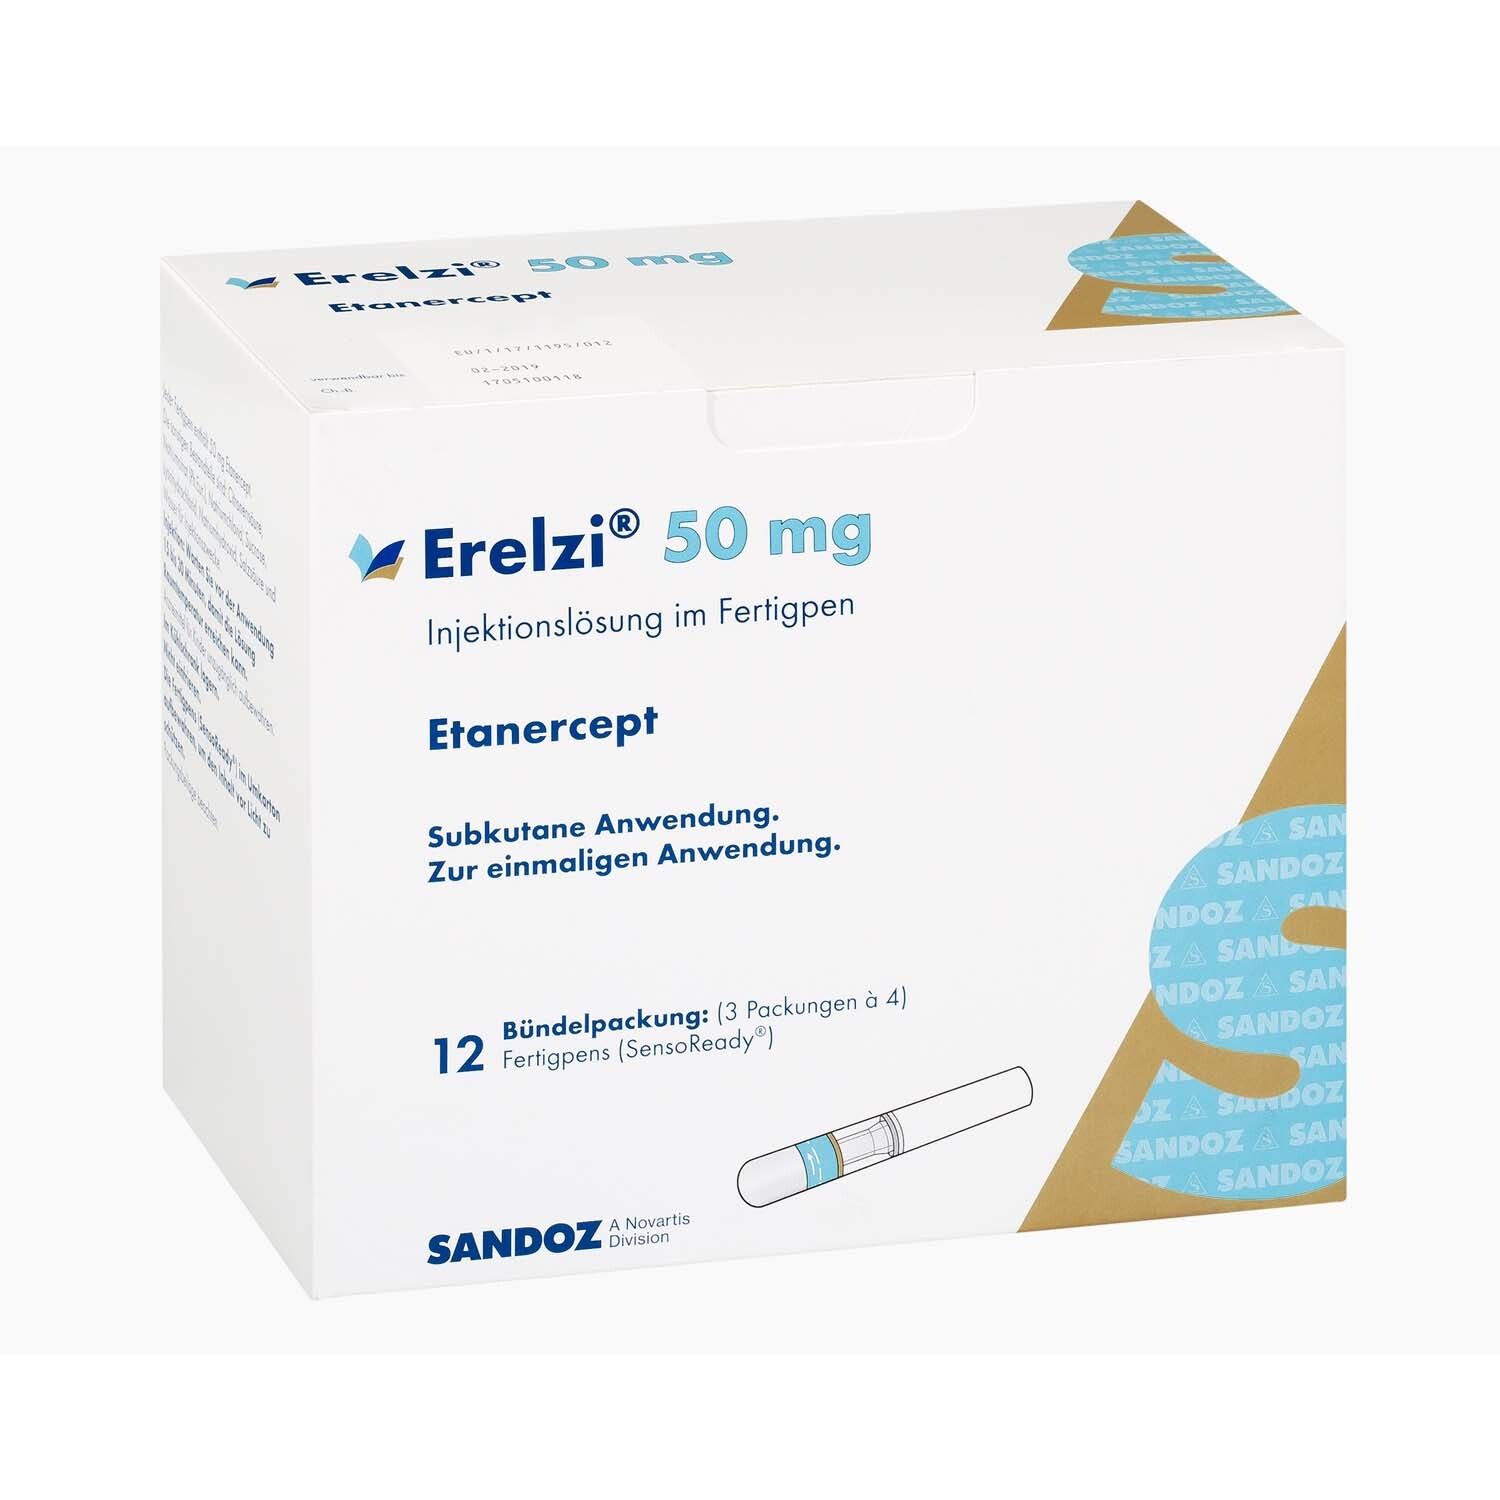 Erelzi® 50 mg